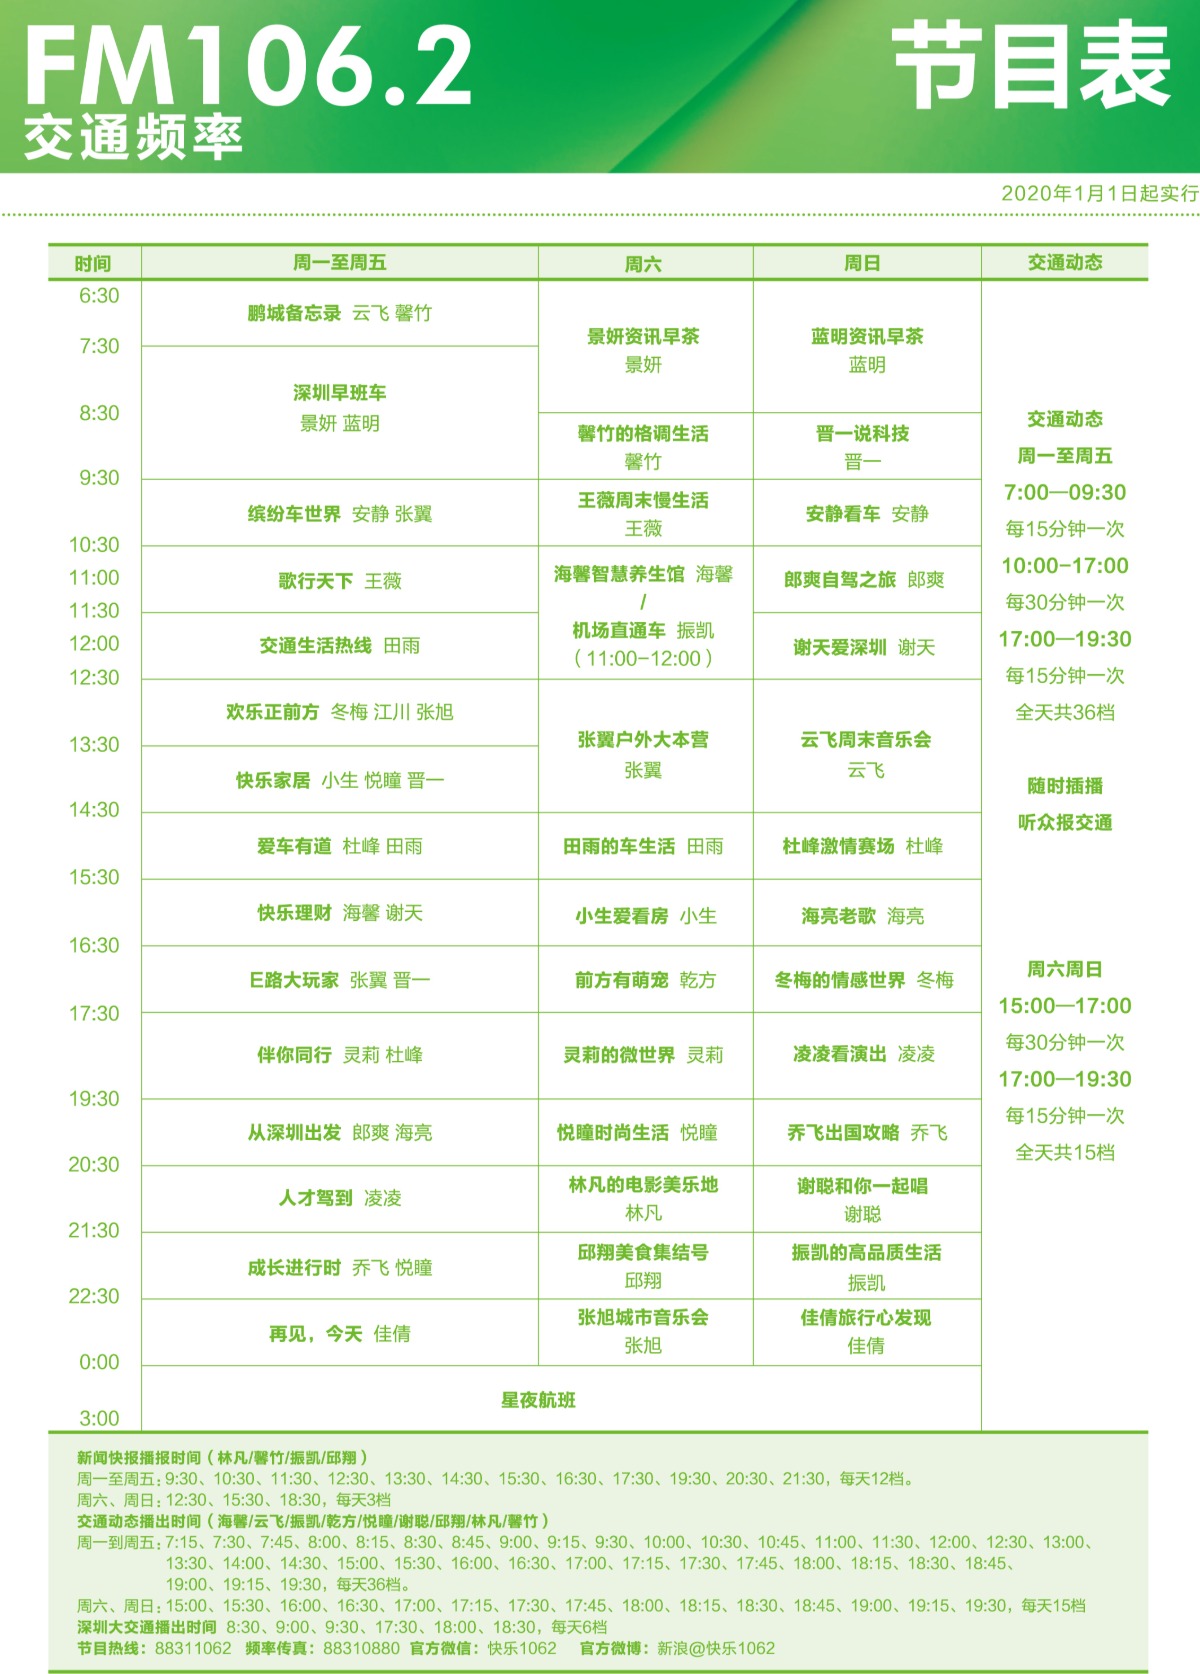 深圳交通广播1062节目表